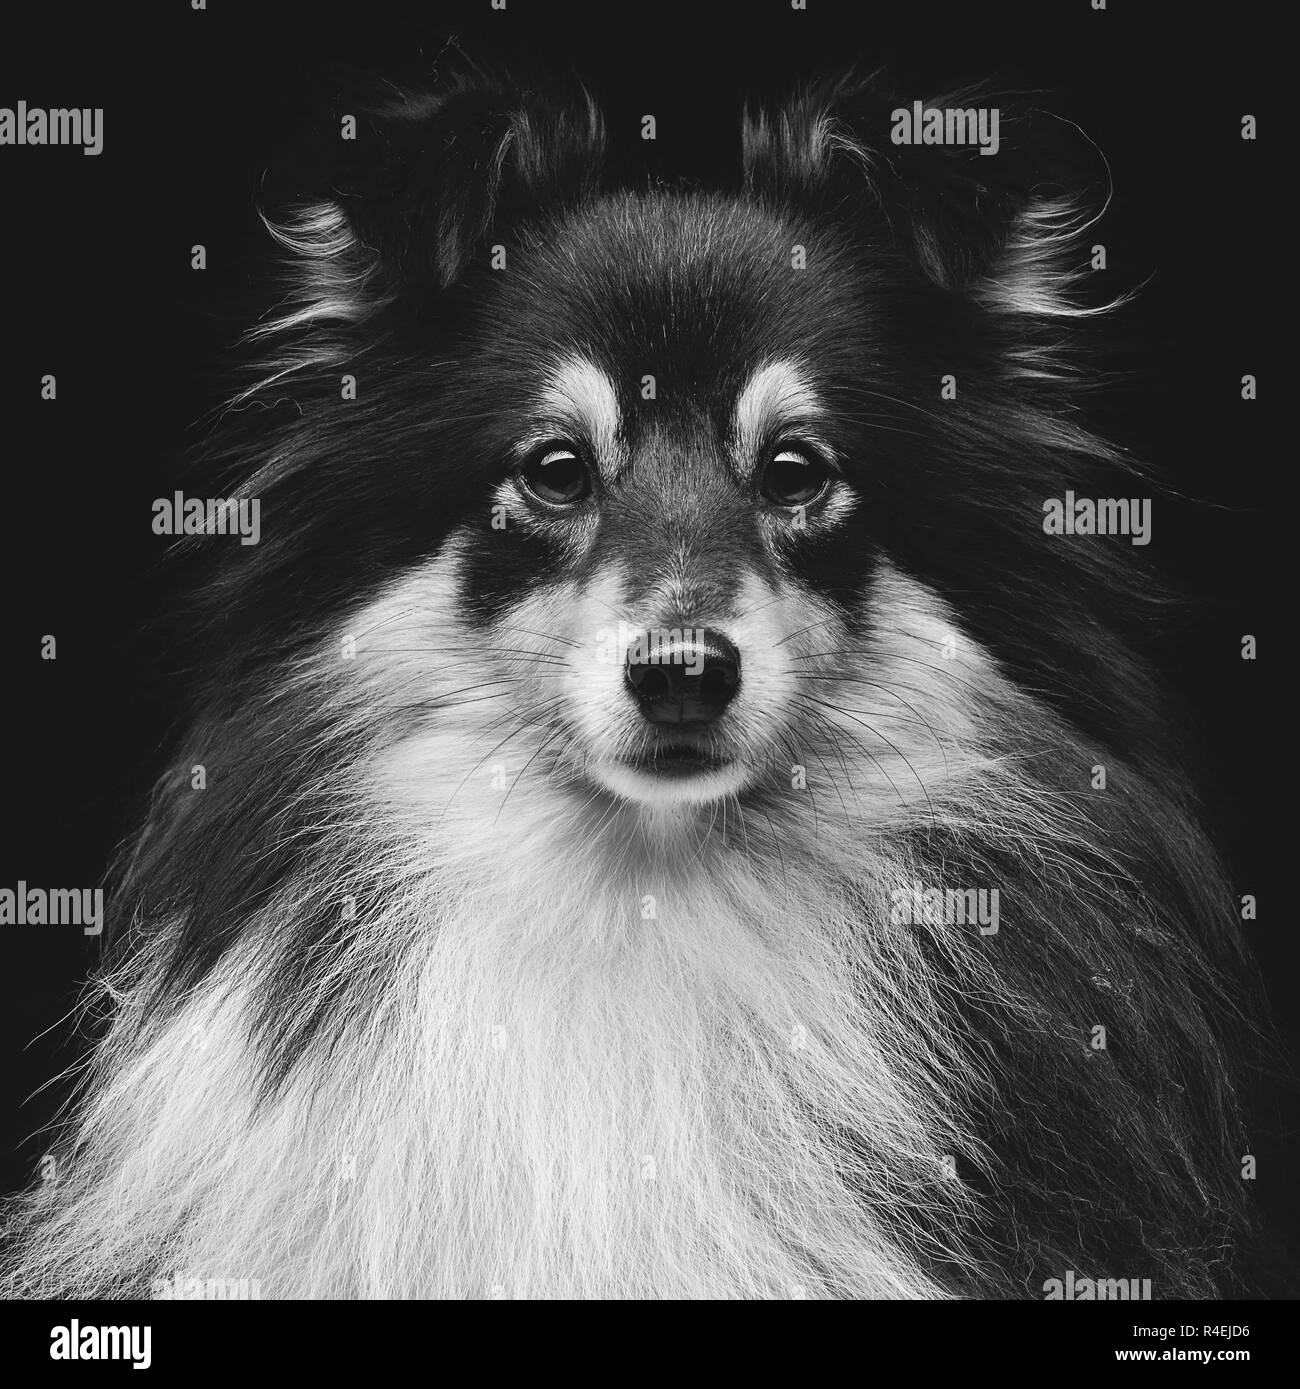 Dog sheltie Black and White Stock Photos & Images - Alamy